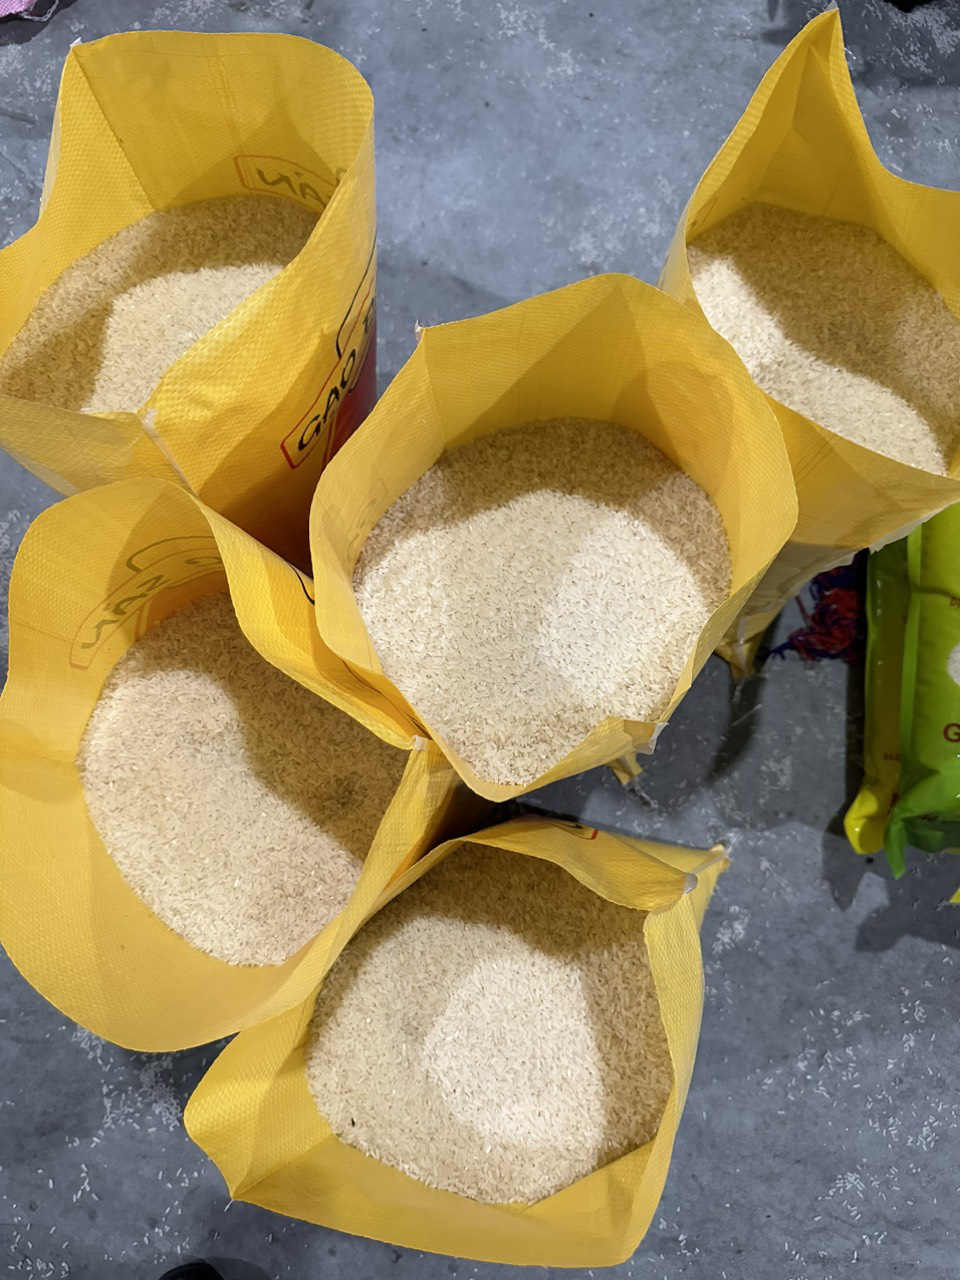 Gạo "nhái" được bán công khai trên sàn Shopee- Ảnh 3.